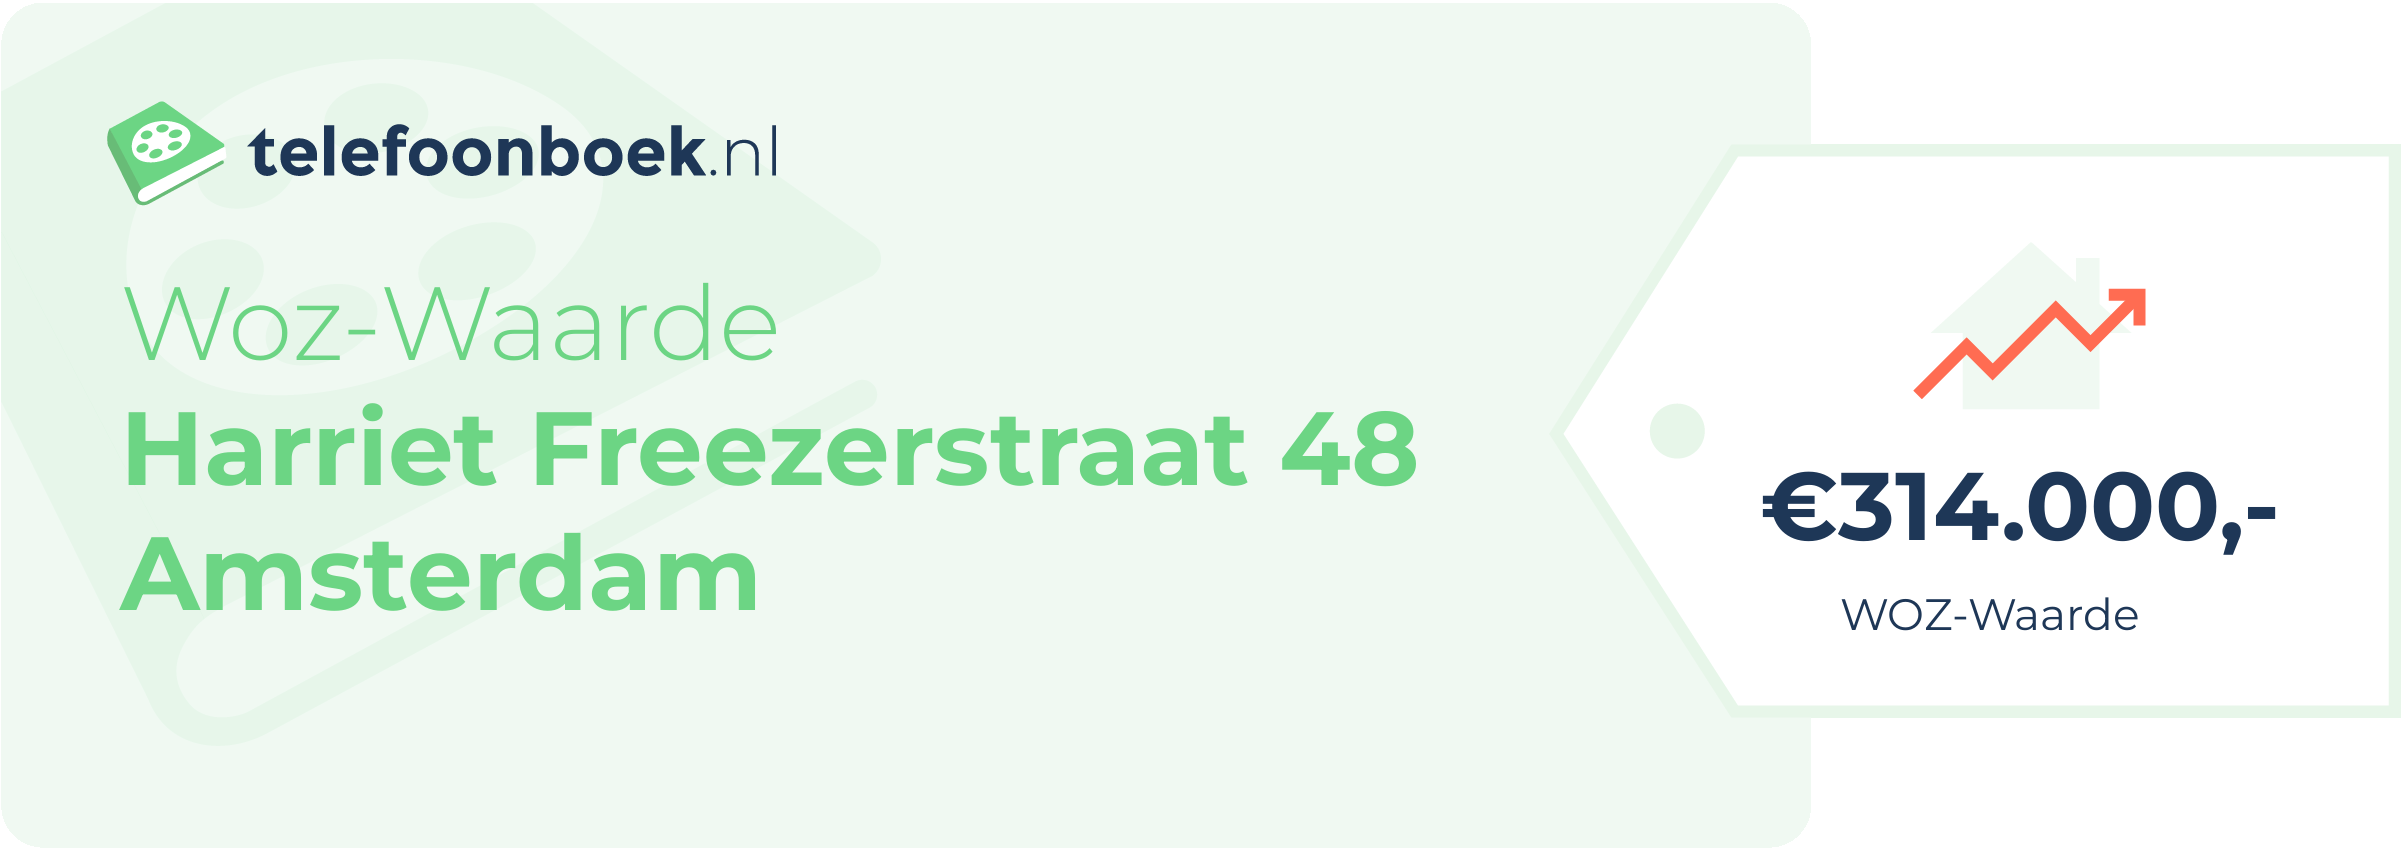 WOZ-waarde Harriet Freezerstraat 48 Amsterdam